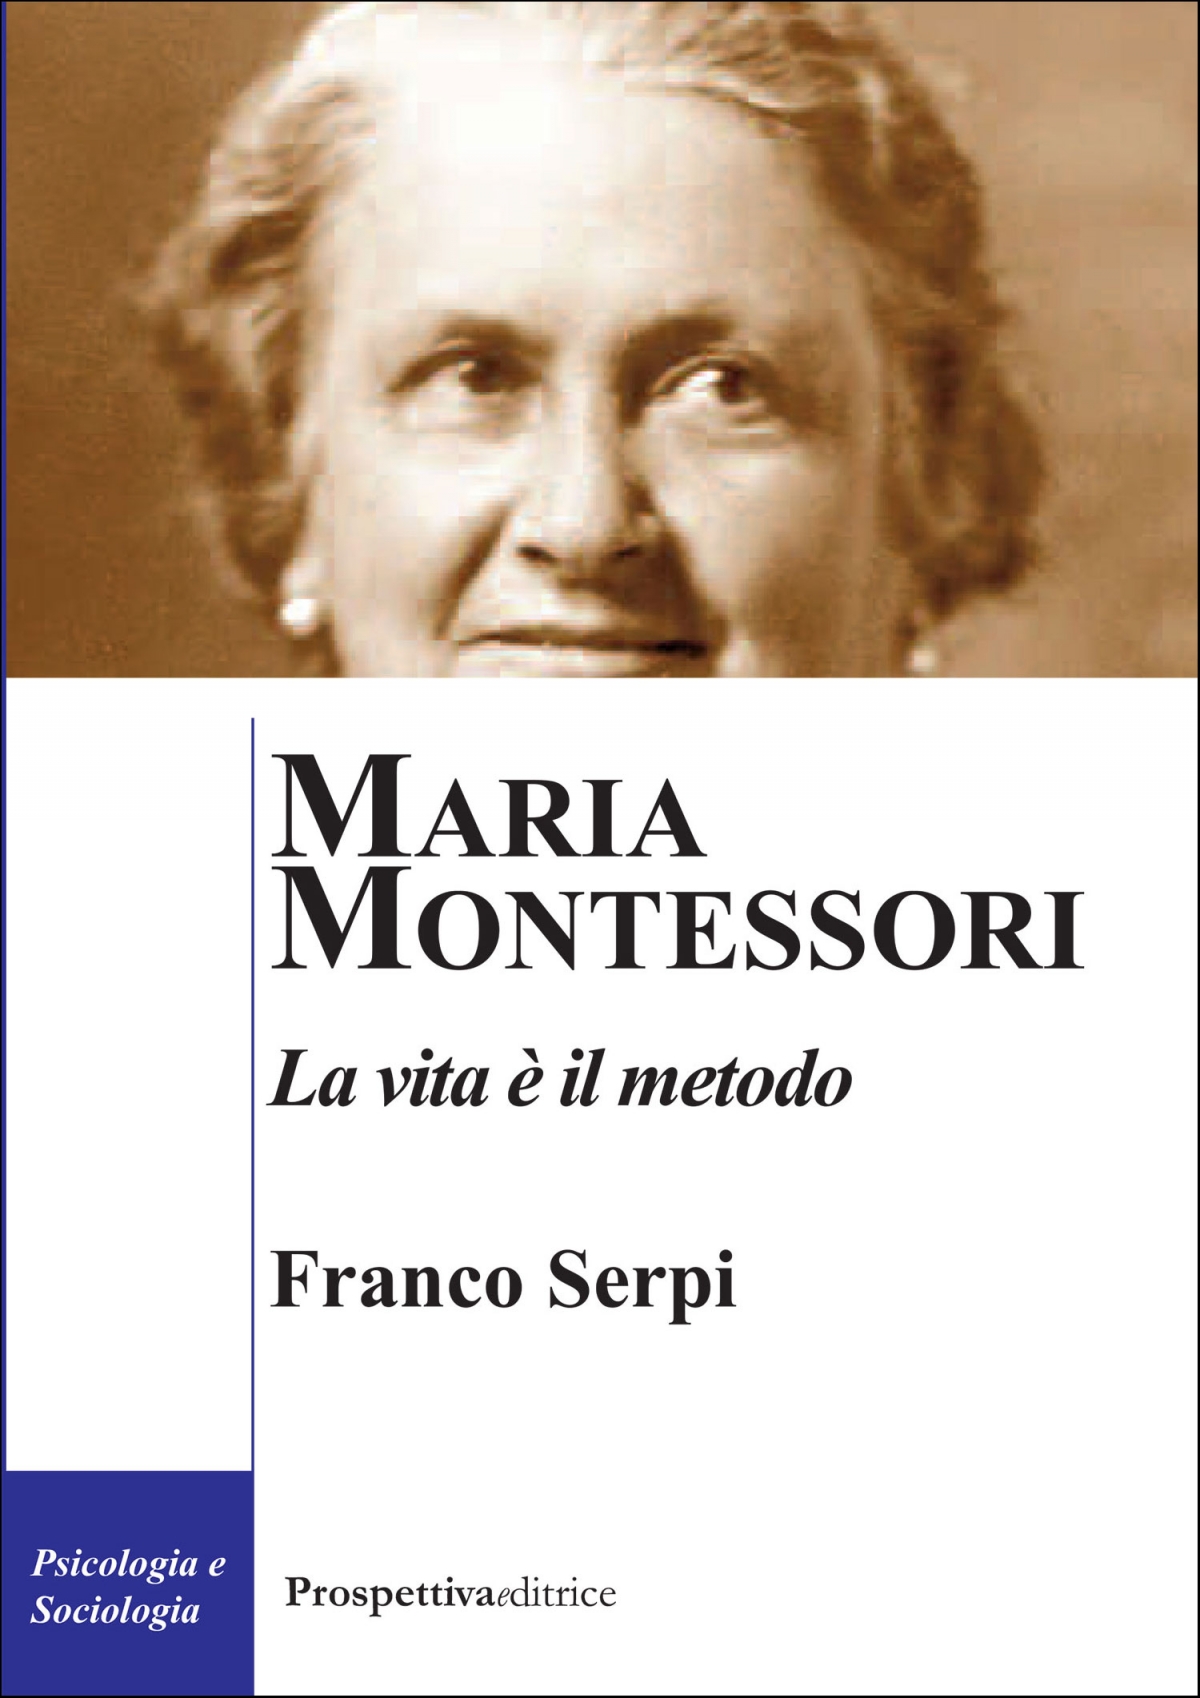 Maria Montessori. La vita è il metodo